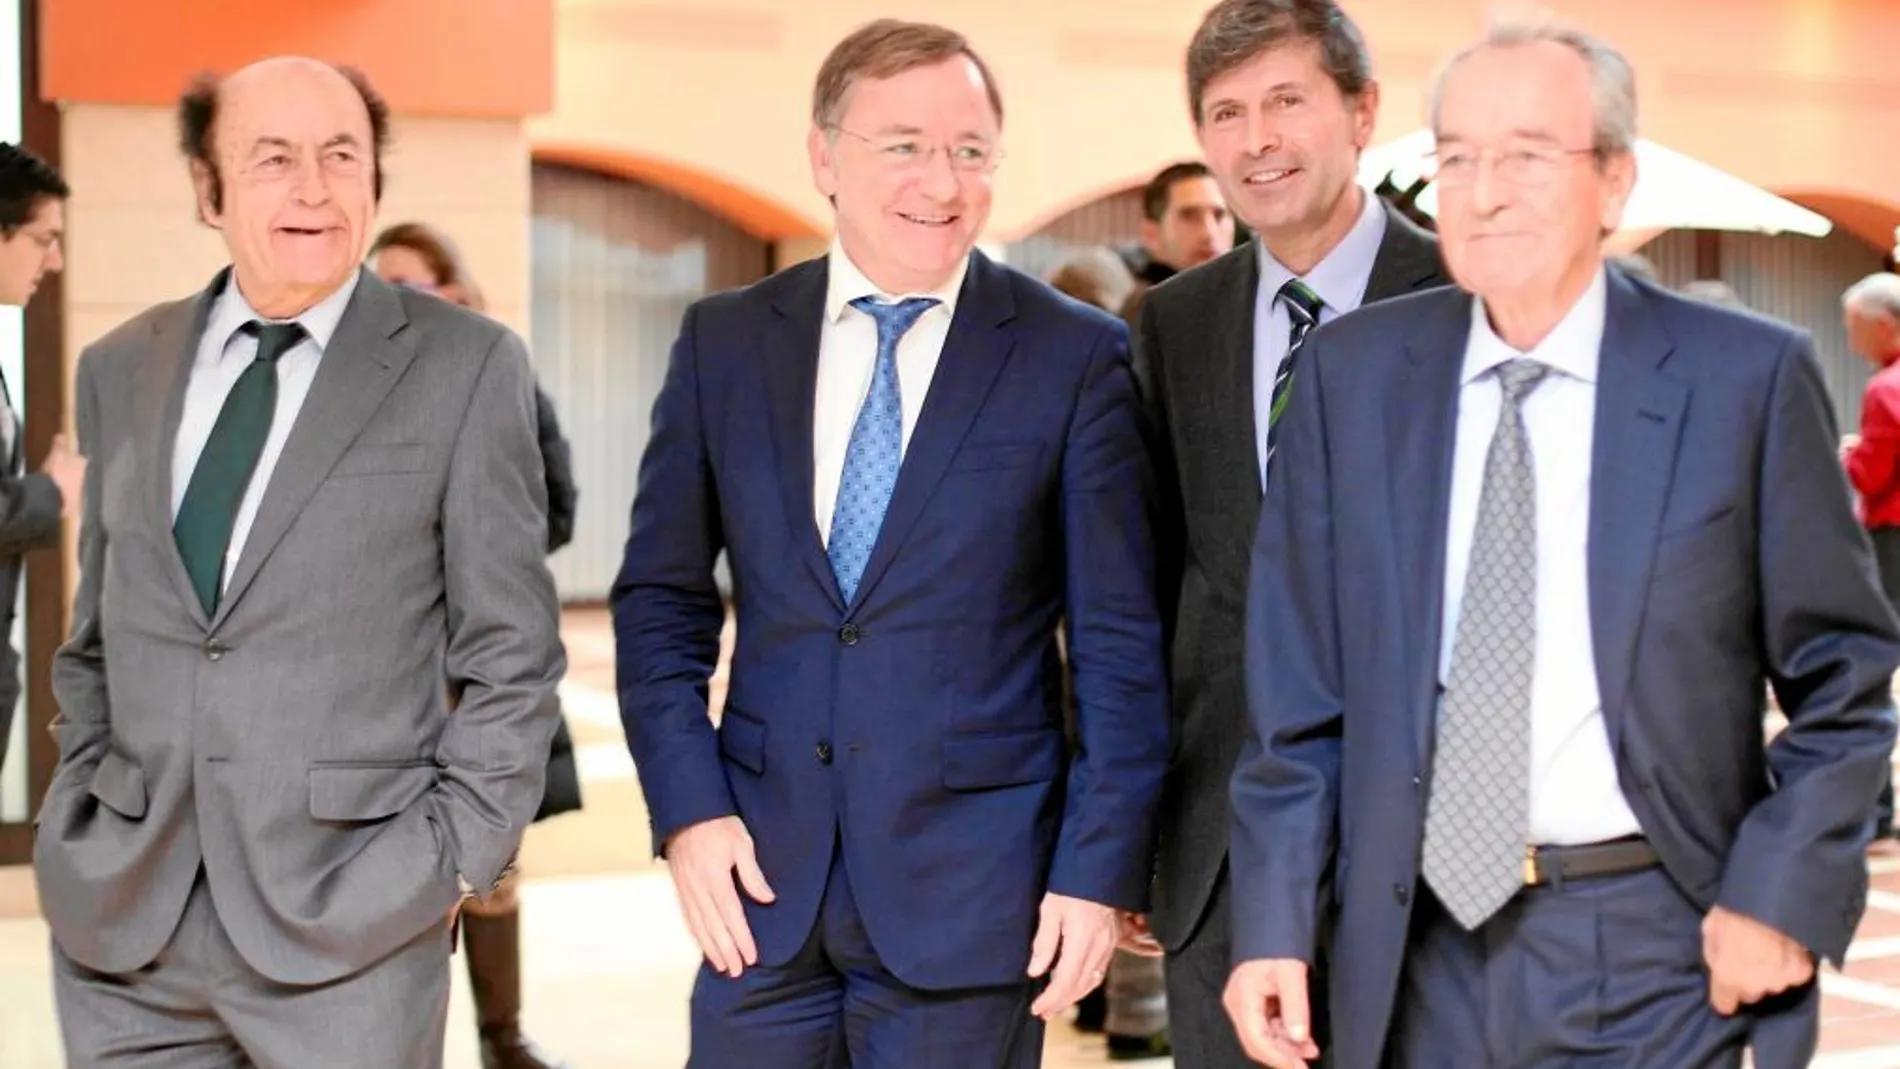 El conseller de Hacienda y Administración Pública se reunió ayer con la directiva de la Confederación de Empresarios de Castellón, donde también visitó Porcelanosa